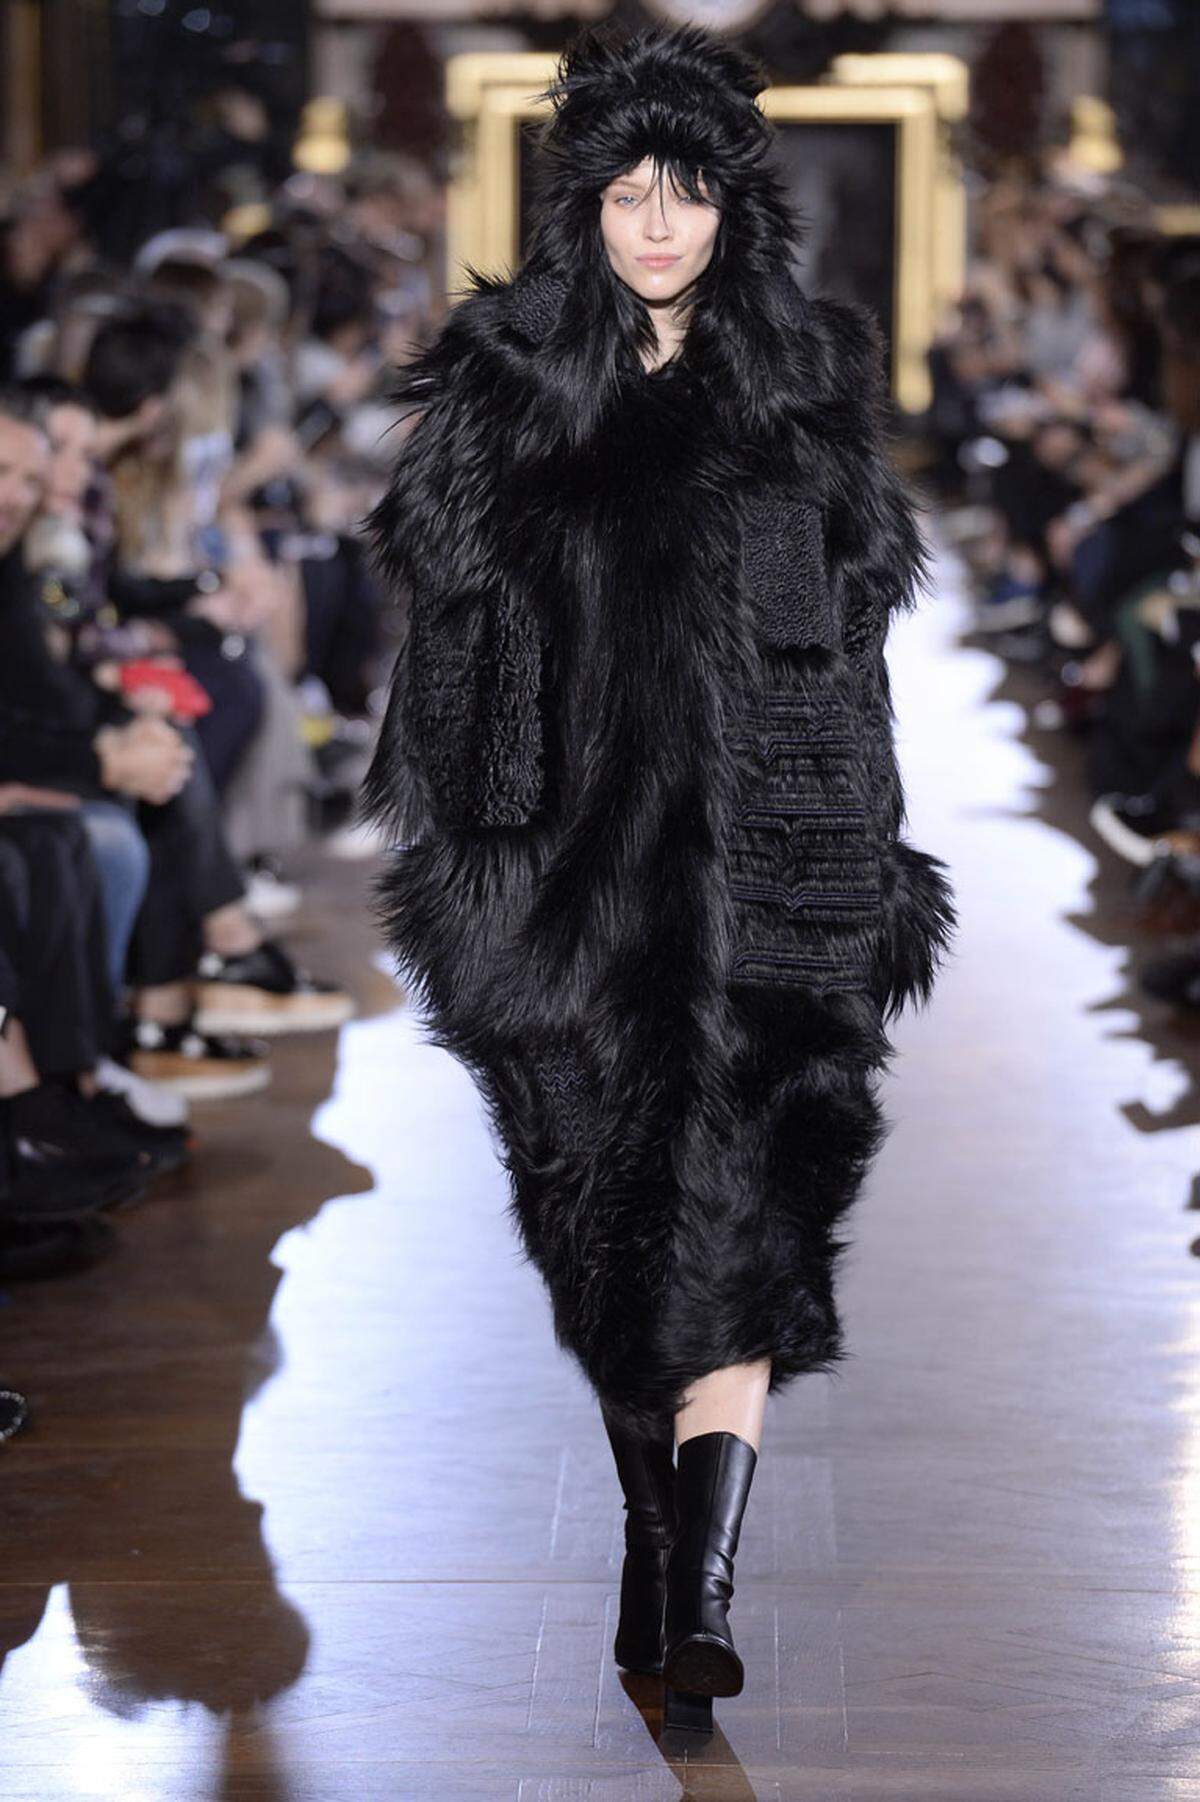 Das kommt: Fake Fur ist schön kuschelig, auch ohne Tierleid zu verursachen. Look von Stella McCartney.